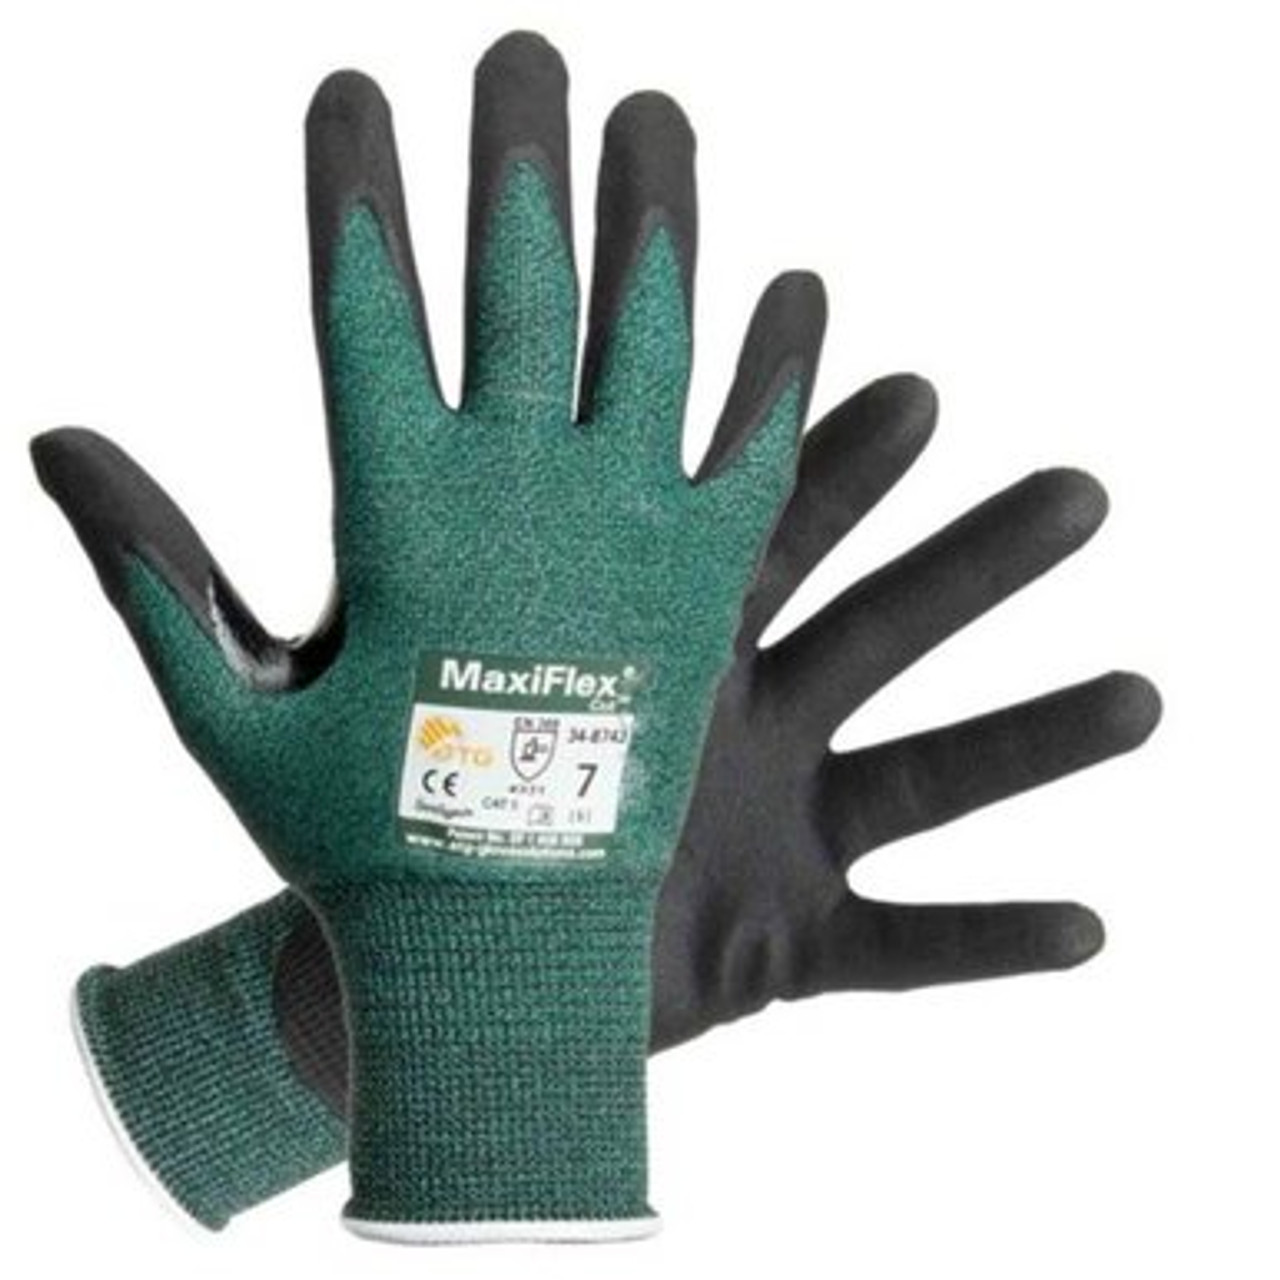 PIP ATG - 44-3745 - MaxiCut Ultra, Cut Resistant Micro-Foam Nitrile Coated  Gloves